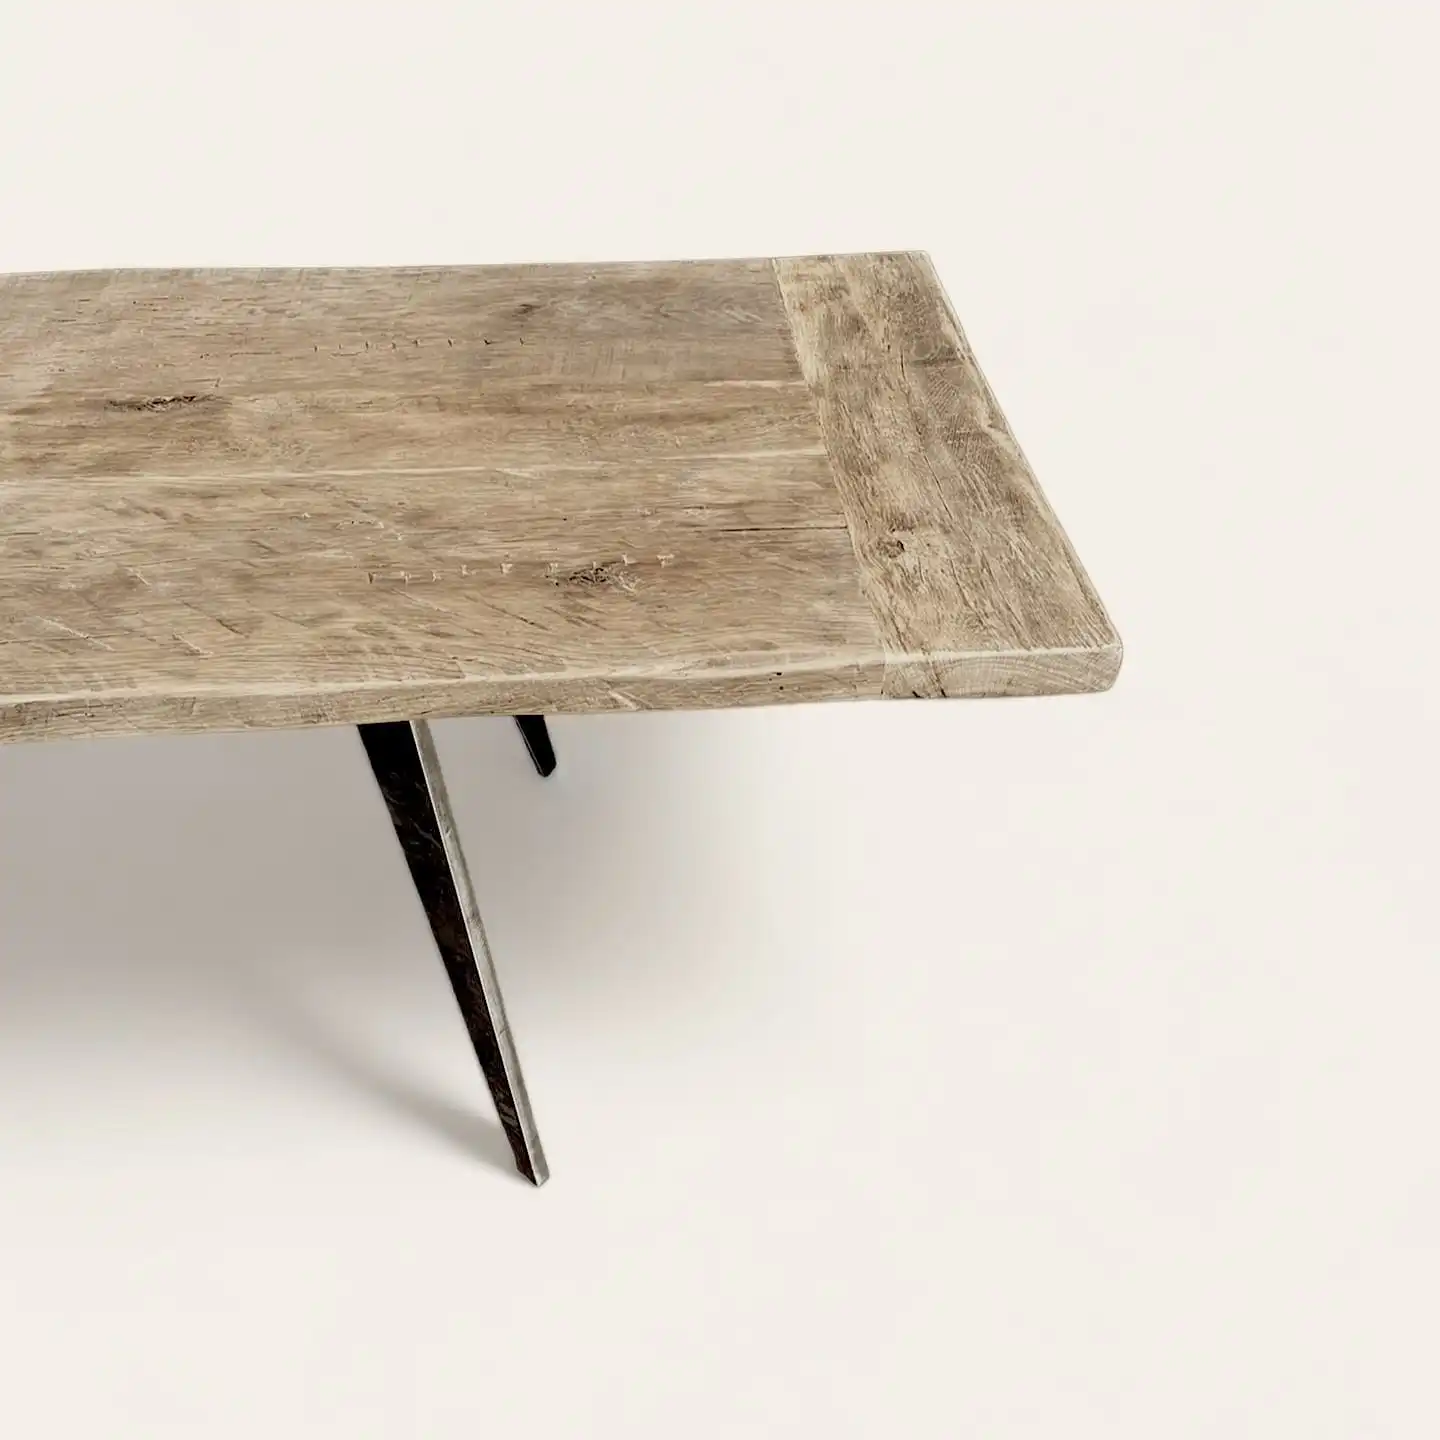  Vue en angle de la texture détaillée d'une table rustique en bois ancien avec une finition naturelle et des pieds en métal inclinés, parfaite pour un design intérieur qui valorise les matériaux durables et l'artisanat. 